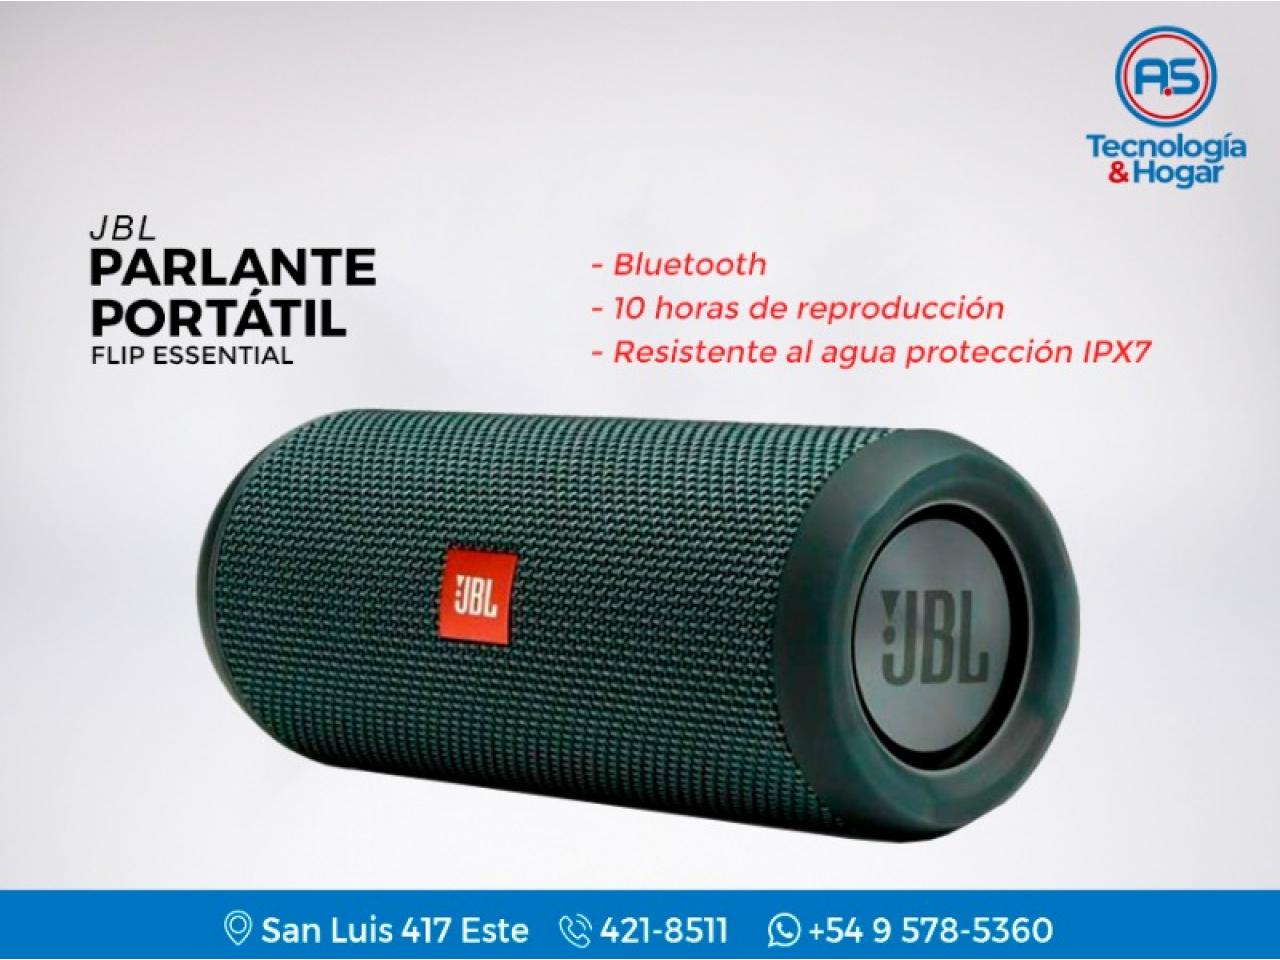 Jbl Flip Essential - Bluetooth - 10 Horas De Reproducción - Resistente Al Ipx7 - Calidad De Sonido - Nuevo - Comprá en San Juan